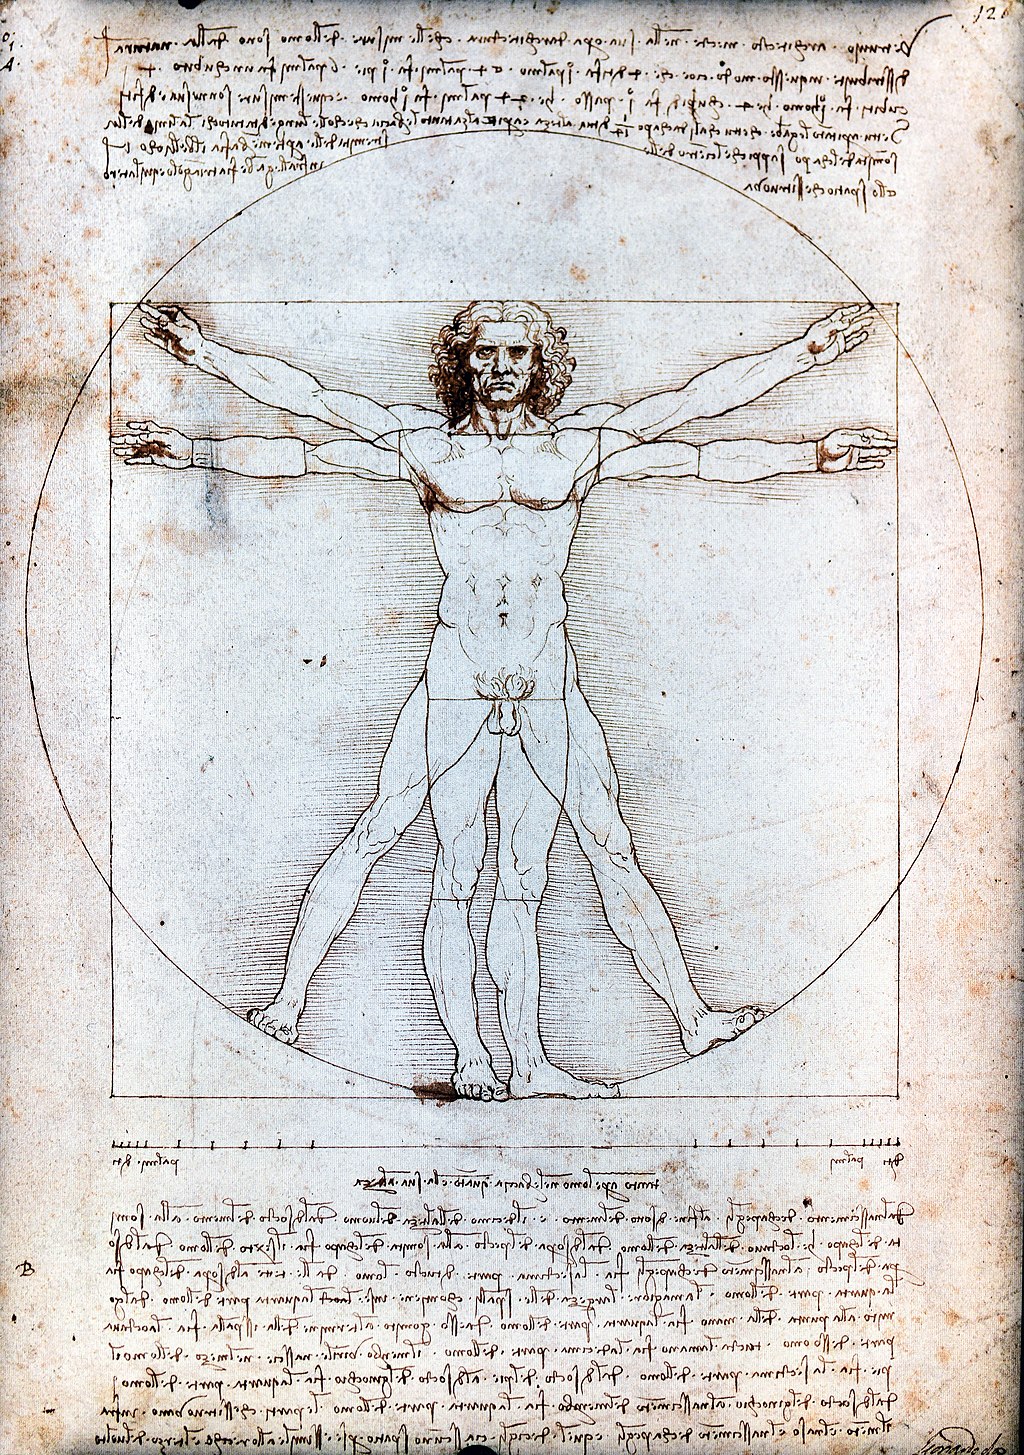 Hombre de Vitruvio dibujo de Leonardo da Vinci expresion del canon estetico renacentista